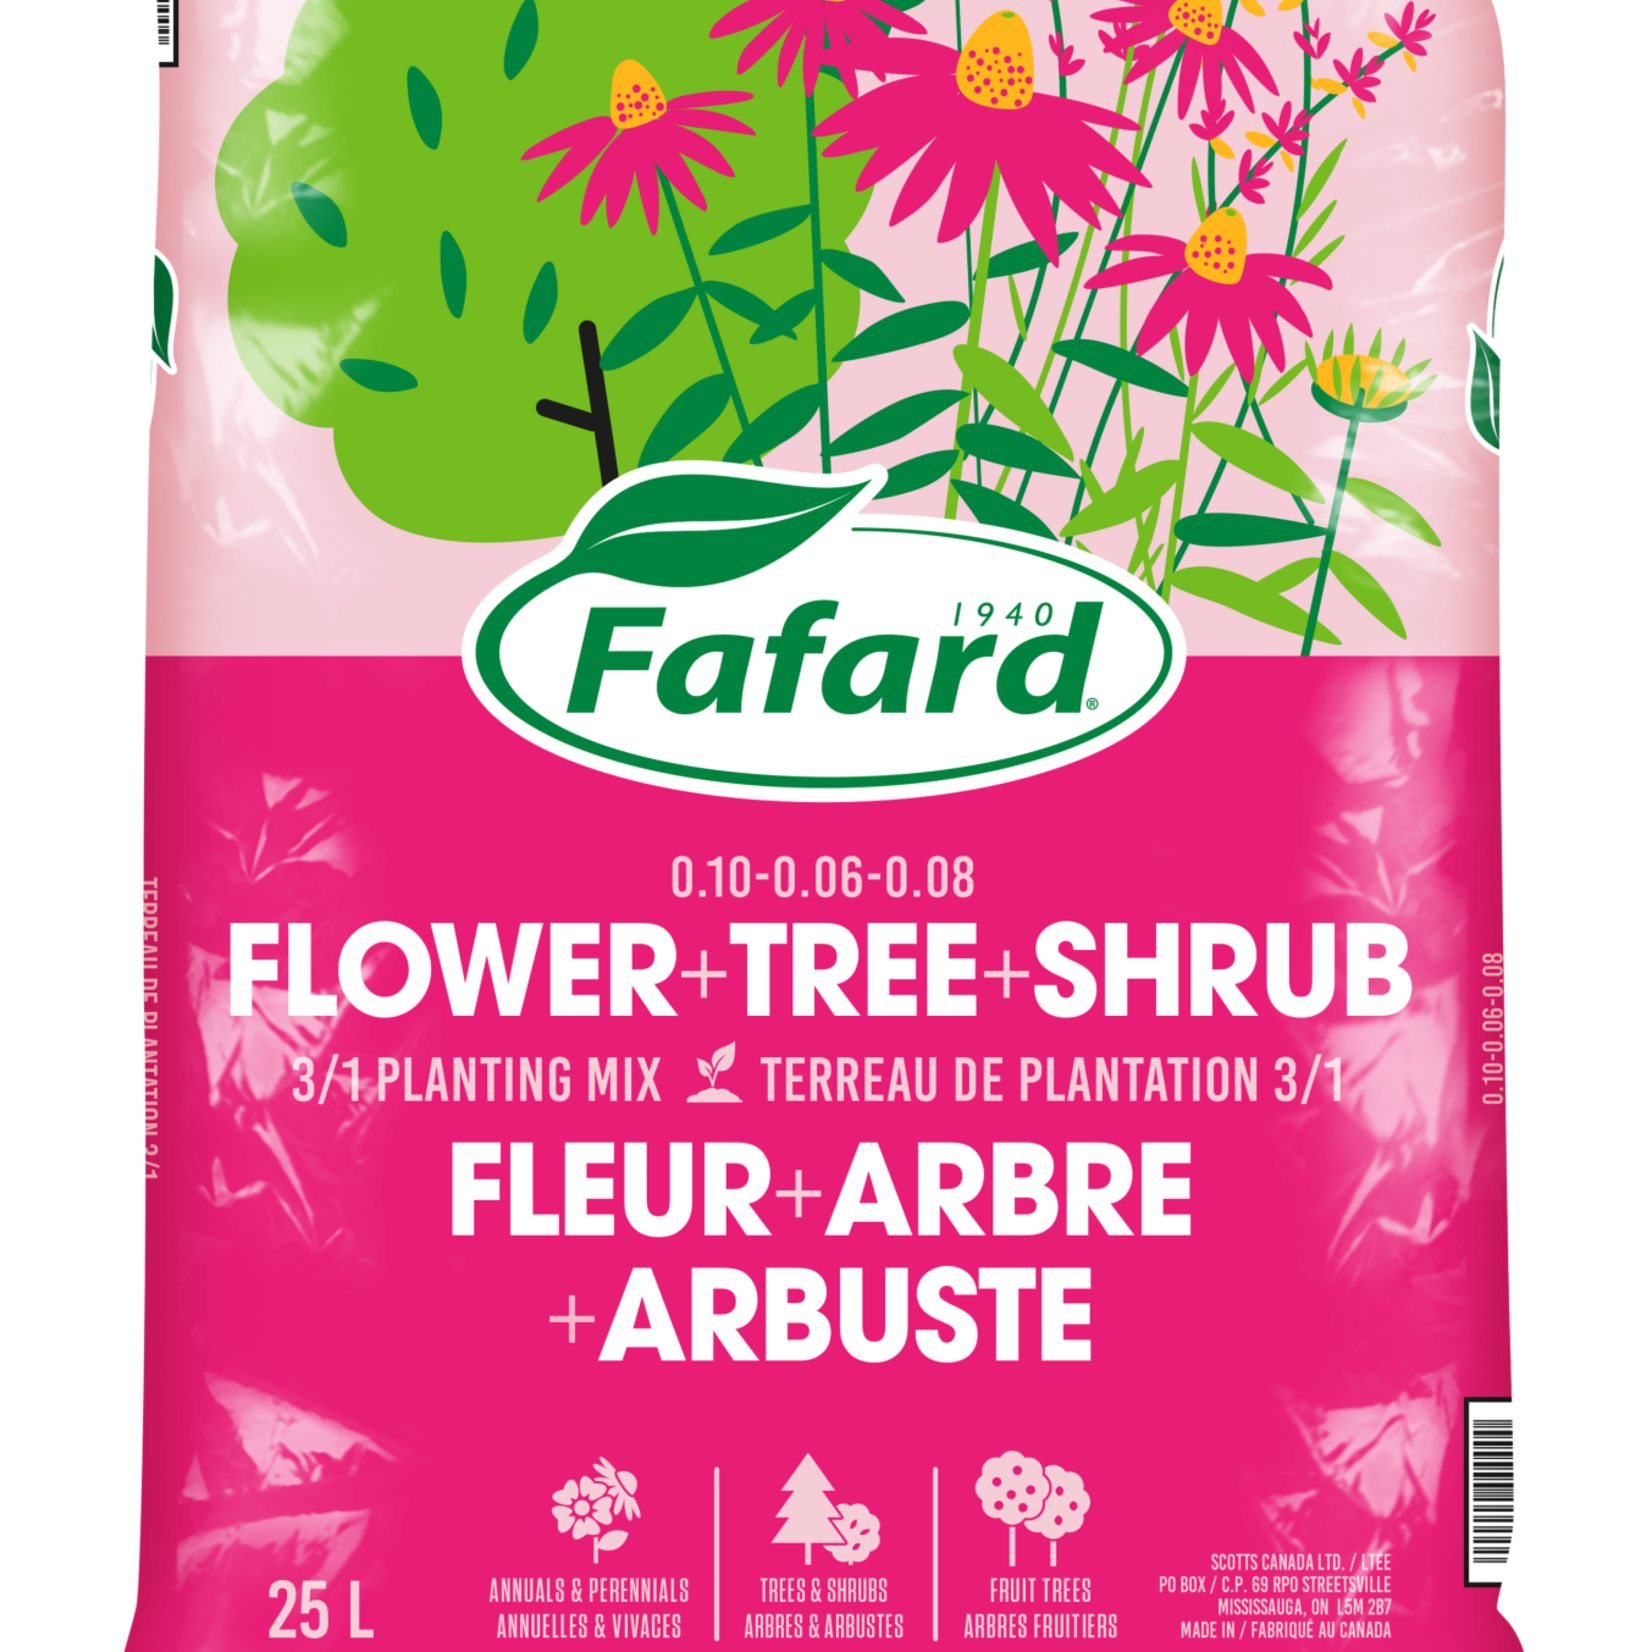 Fafard FA 3-1 Flower & Tree Planting Mix 25 L -NEW